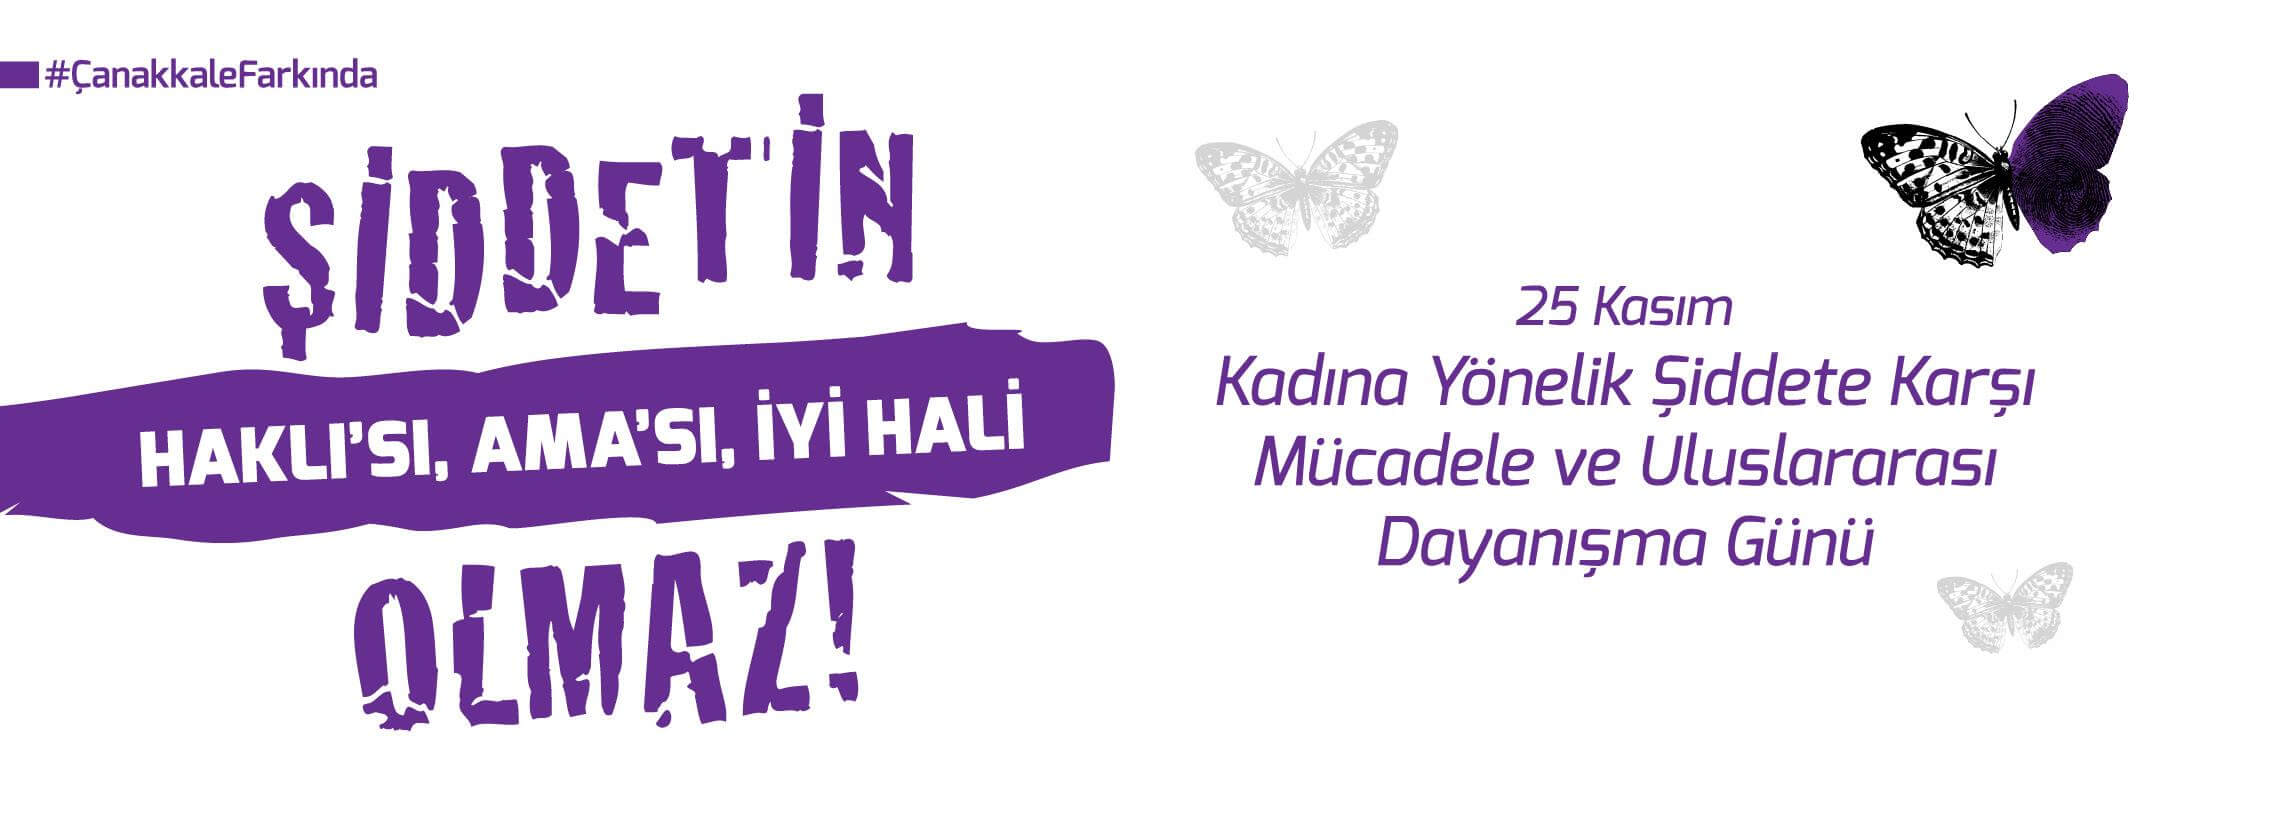 Belediye Başkanı Sayın Ülgür Gökhan'ın 25 Kasım Kadına Yönelik Şiddete Karşı Uluslararası Mücadele ve Dayanışma Günü Mesajı…